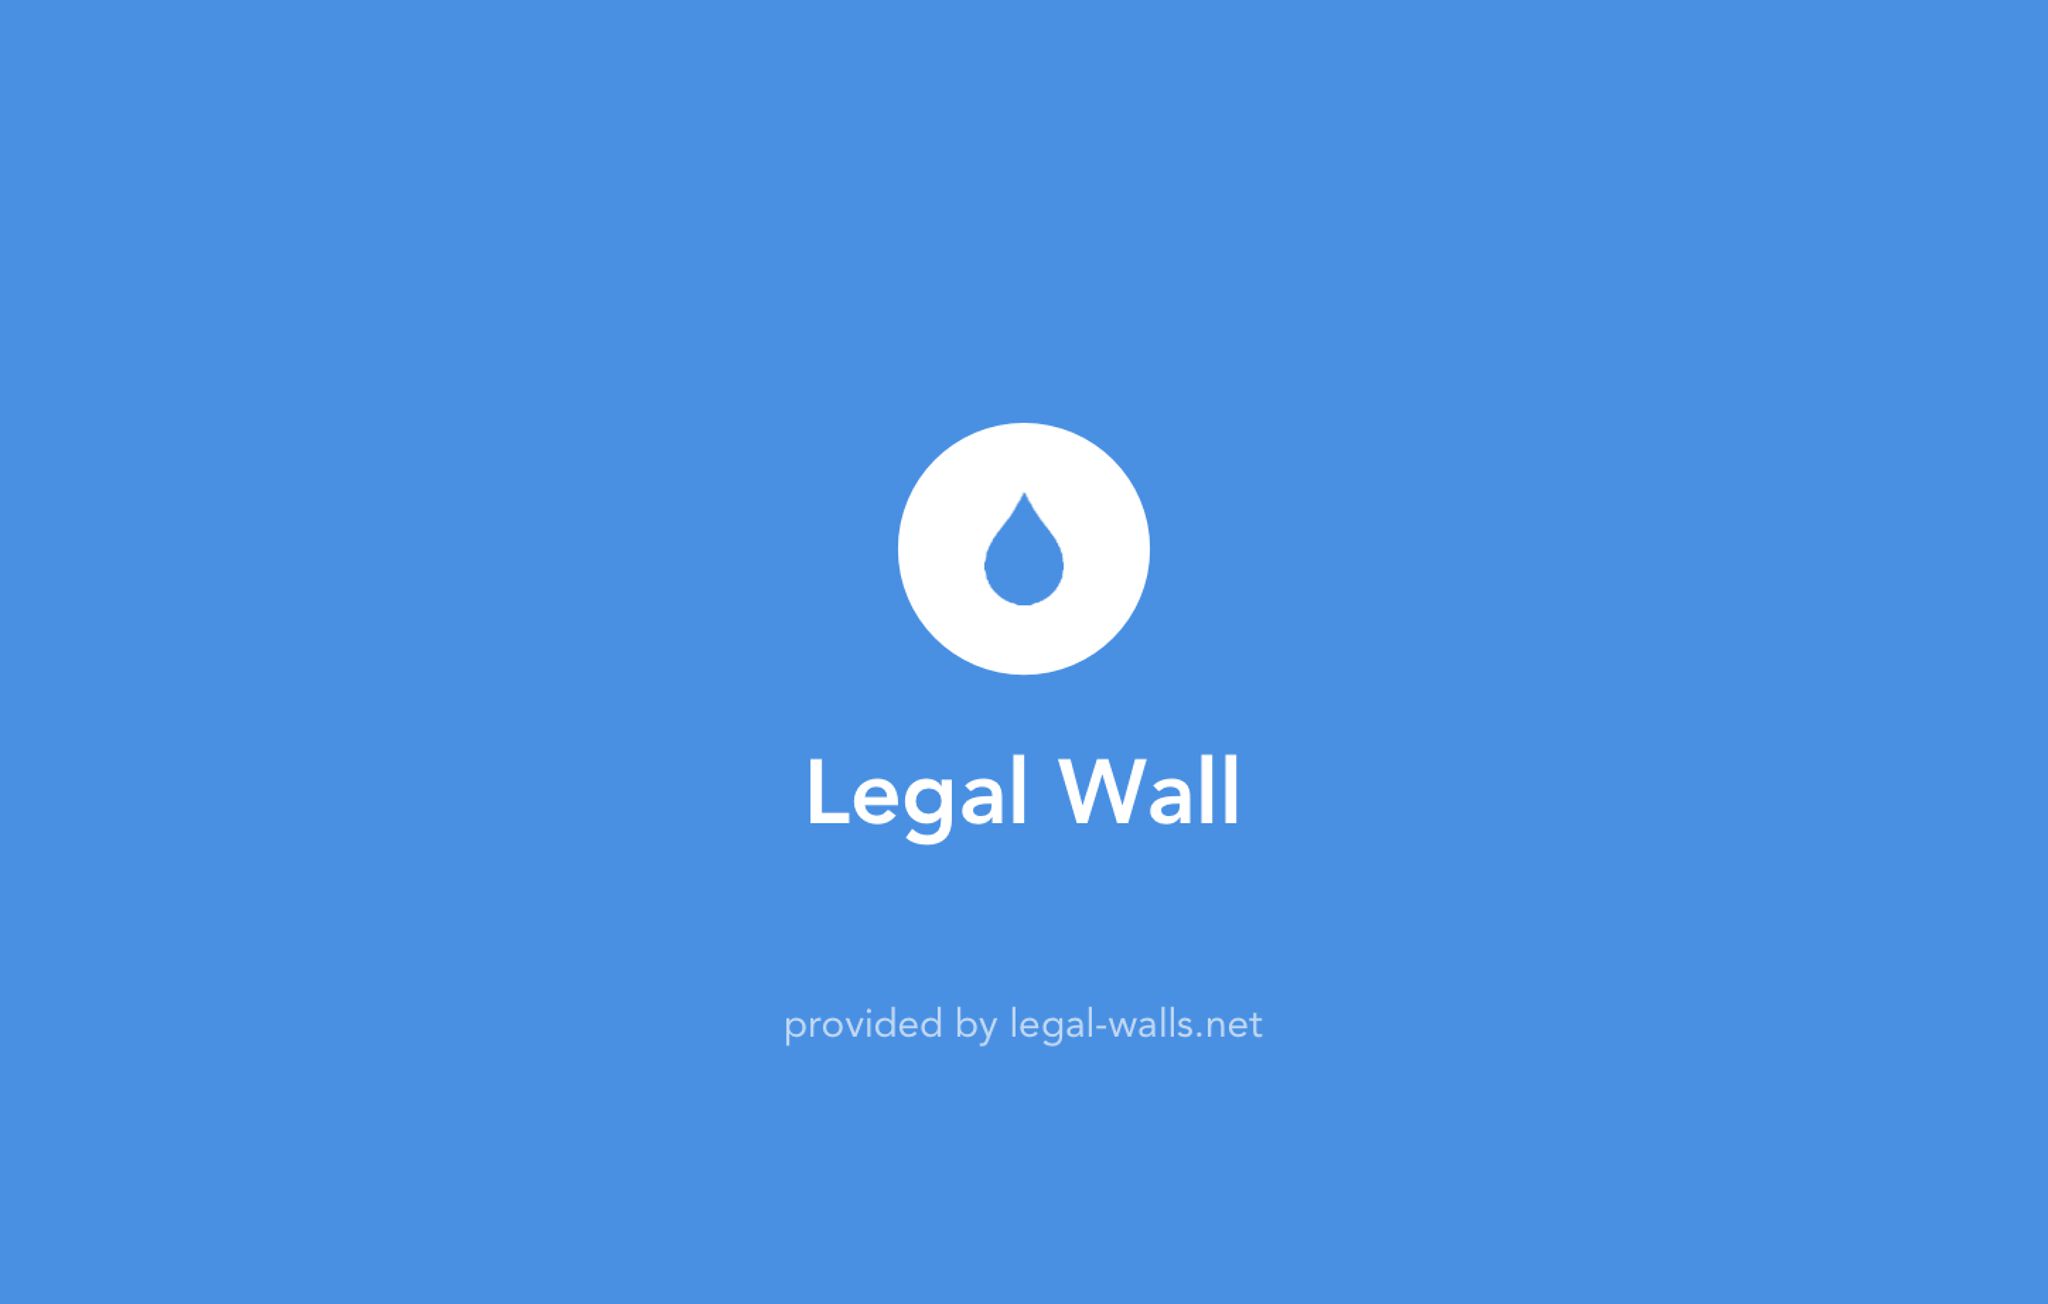 &mdash;Legal Wall Zele